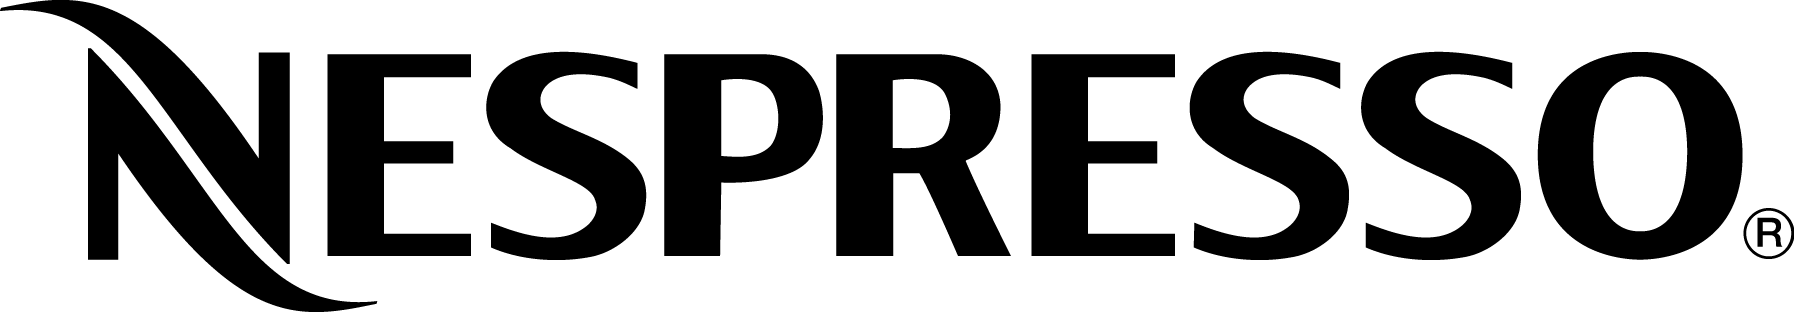 nespresso-logo.png